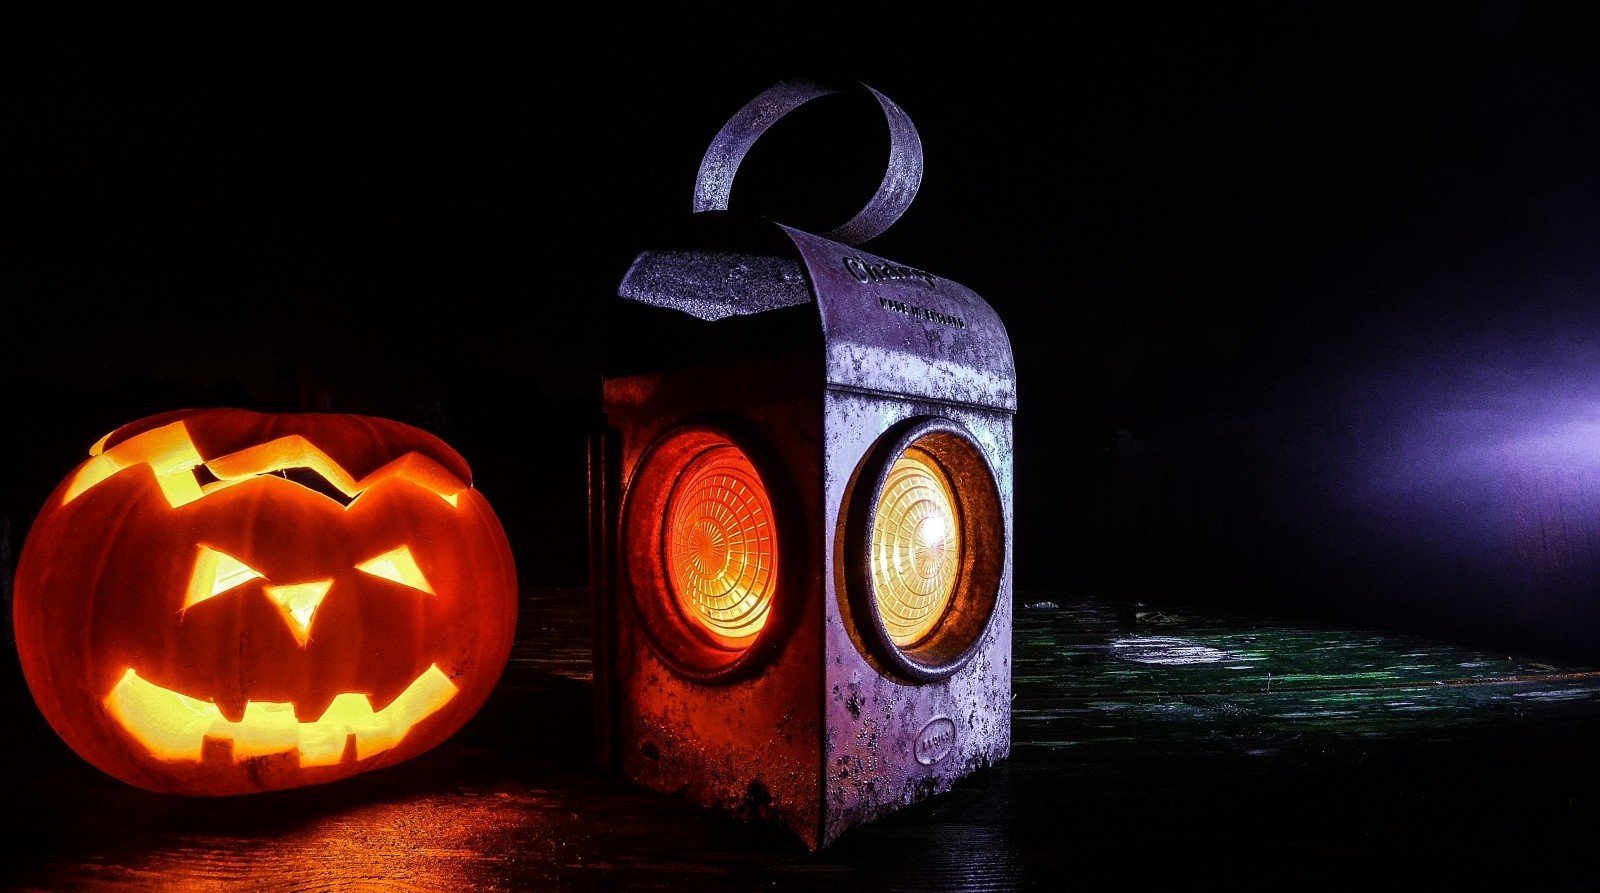 pumpkin lantern - 5 fun ideas for pumpkins this fall